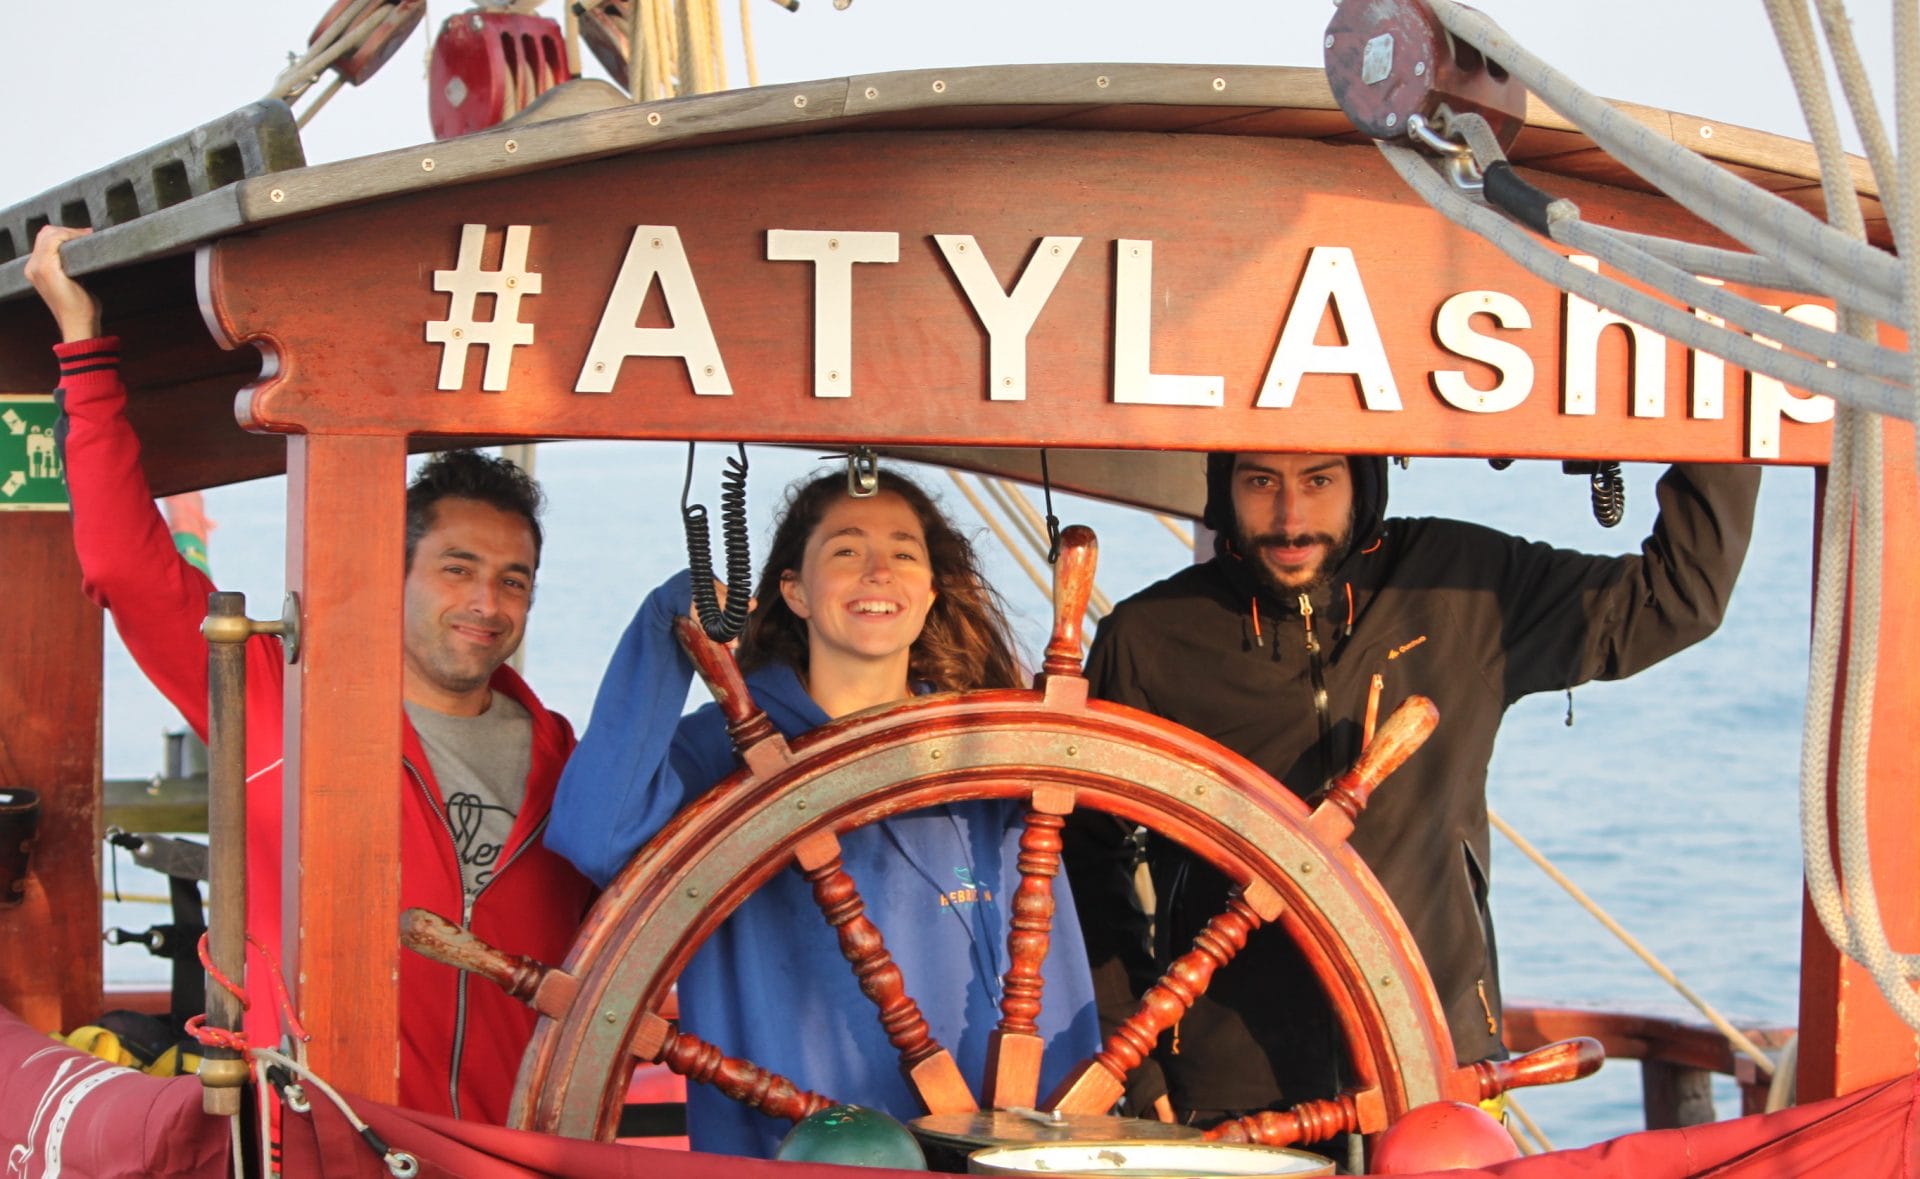 Habilidades suaves Habilidades para a vida Experiencia de aventura Vela Adestramento de vela Atyla Ship